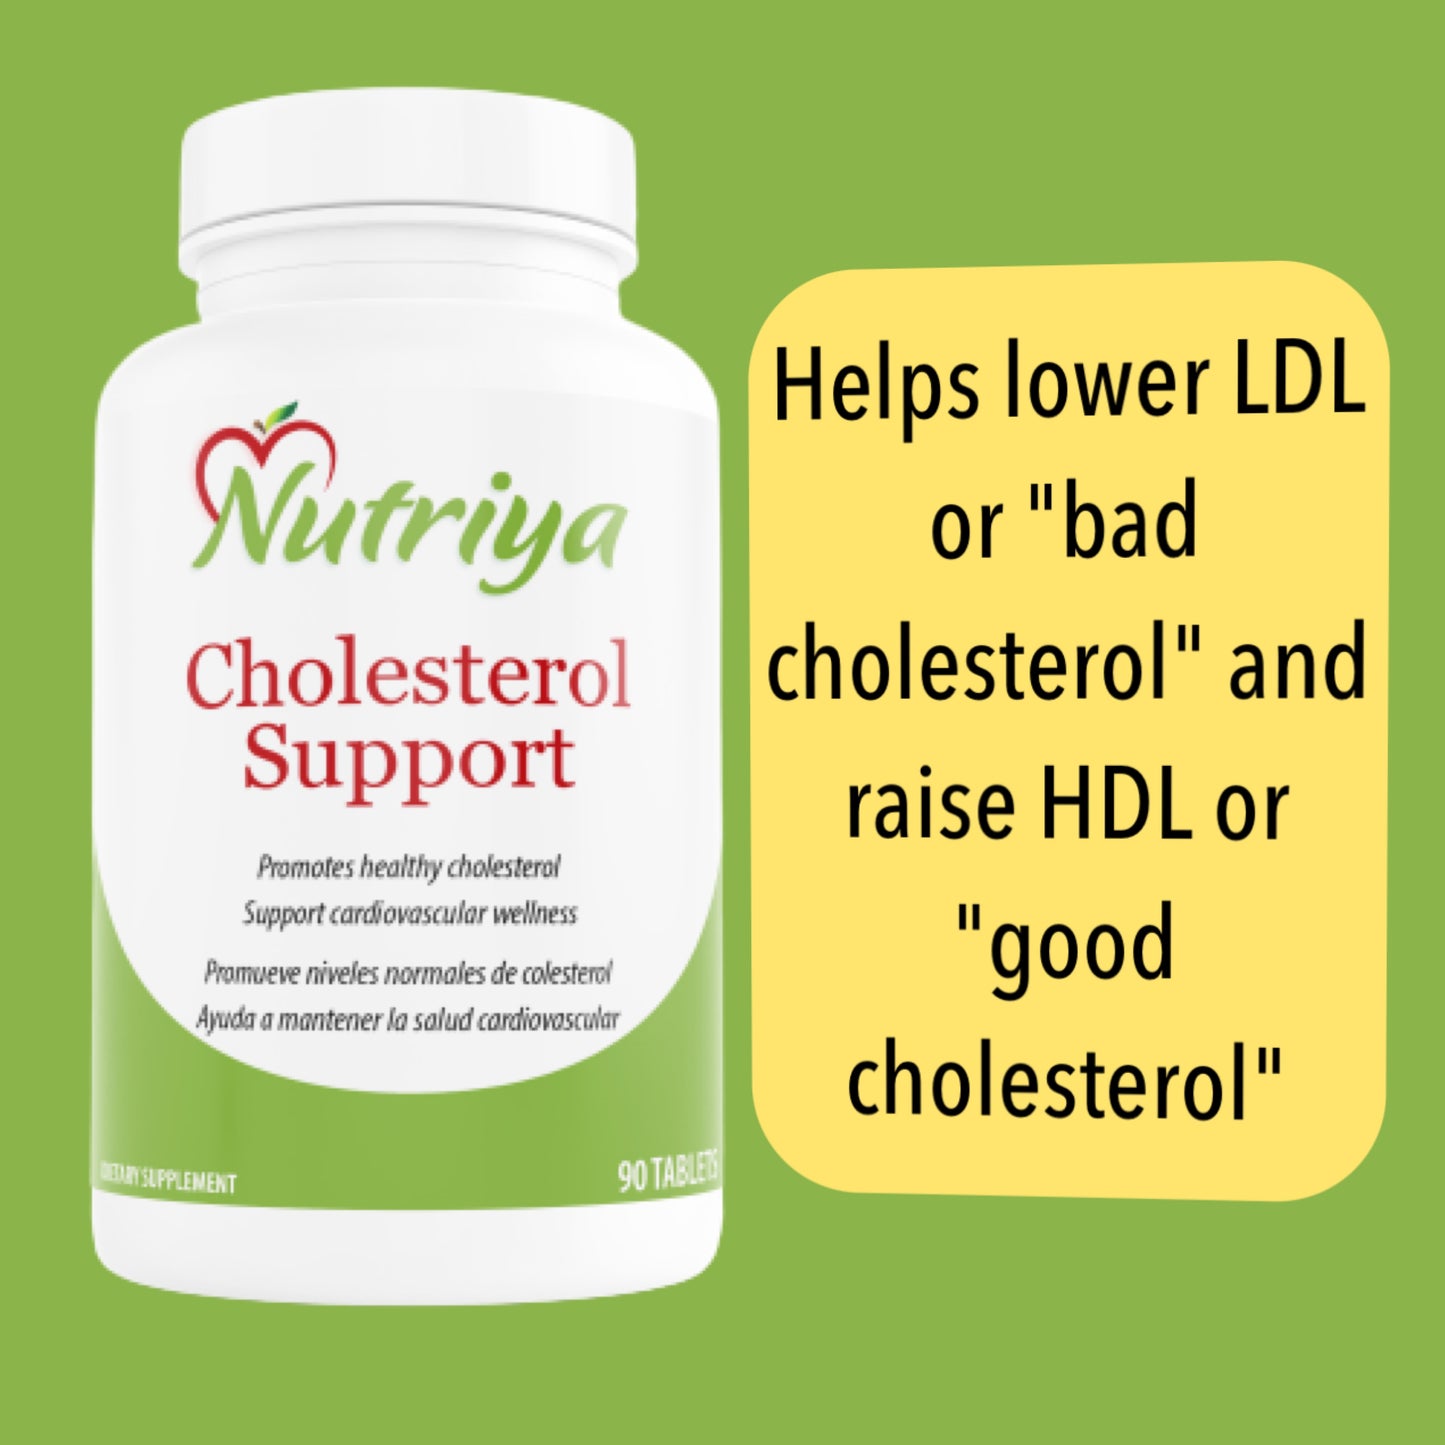 Nutriya Cholesterol Support